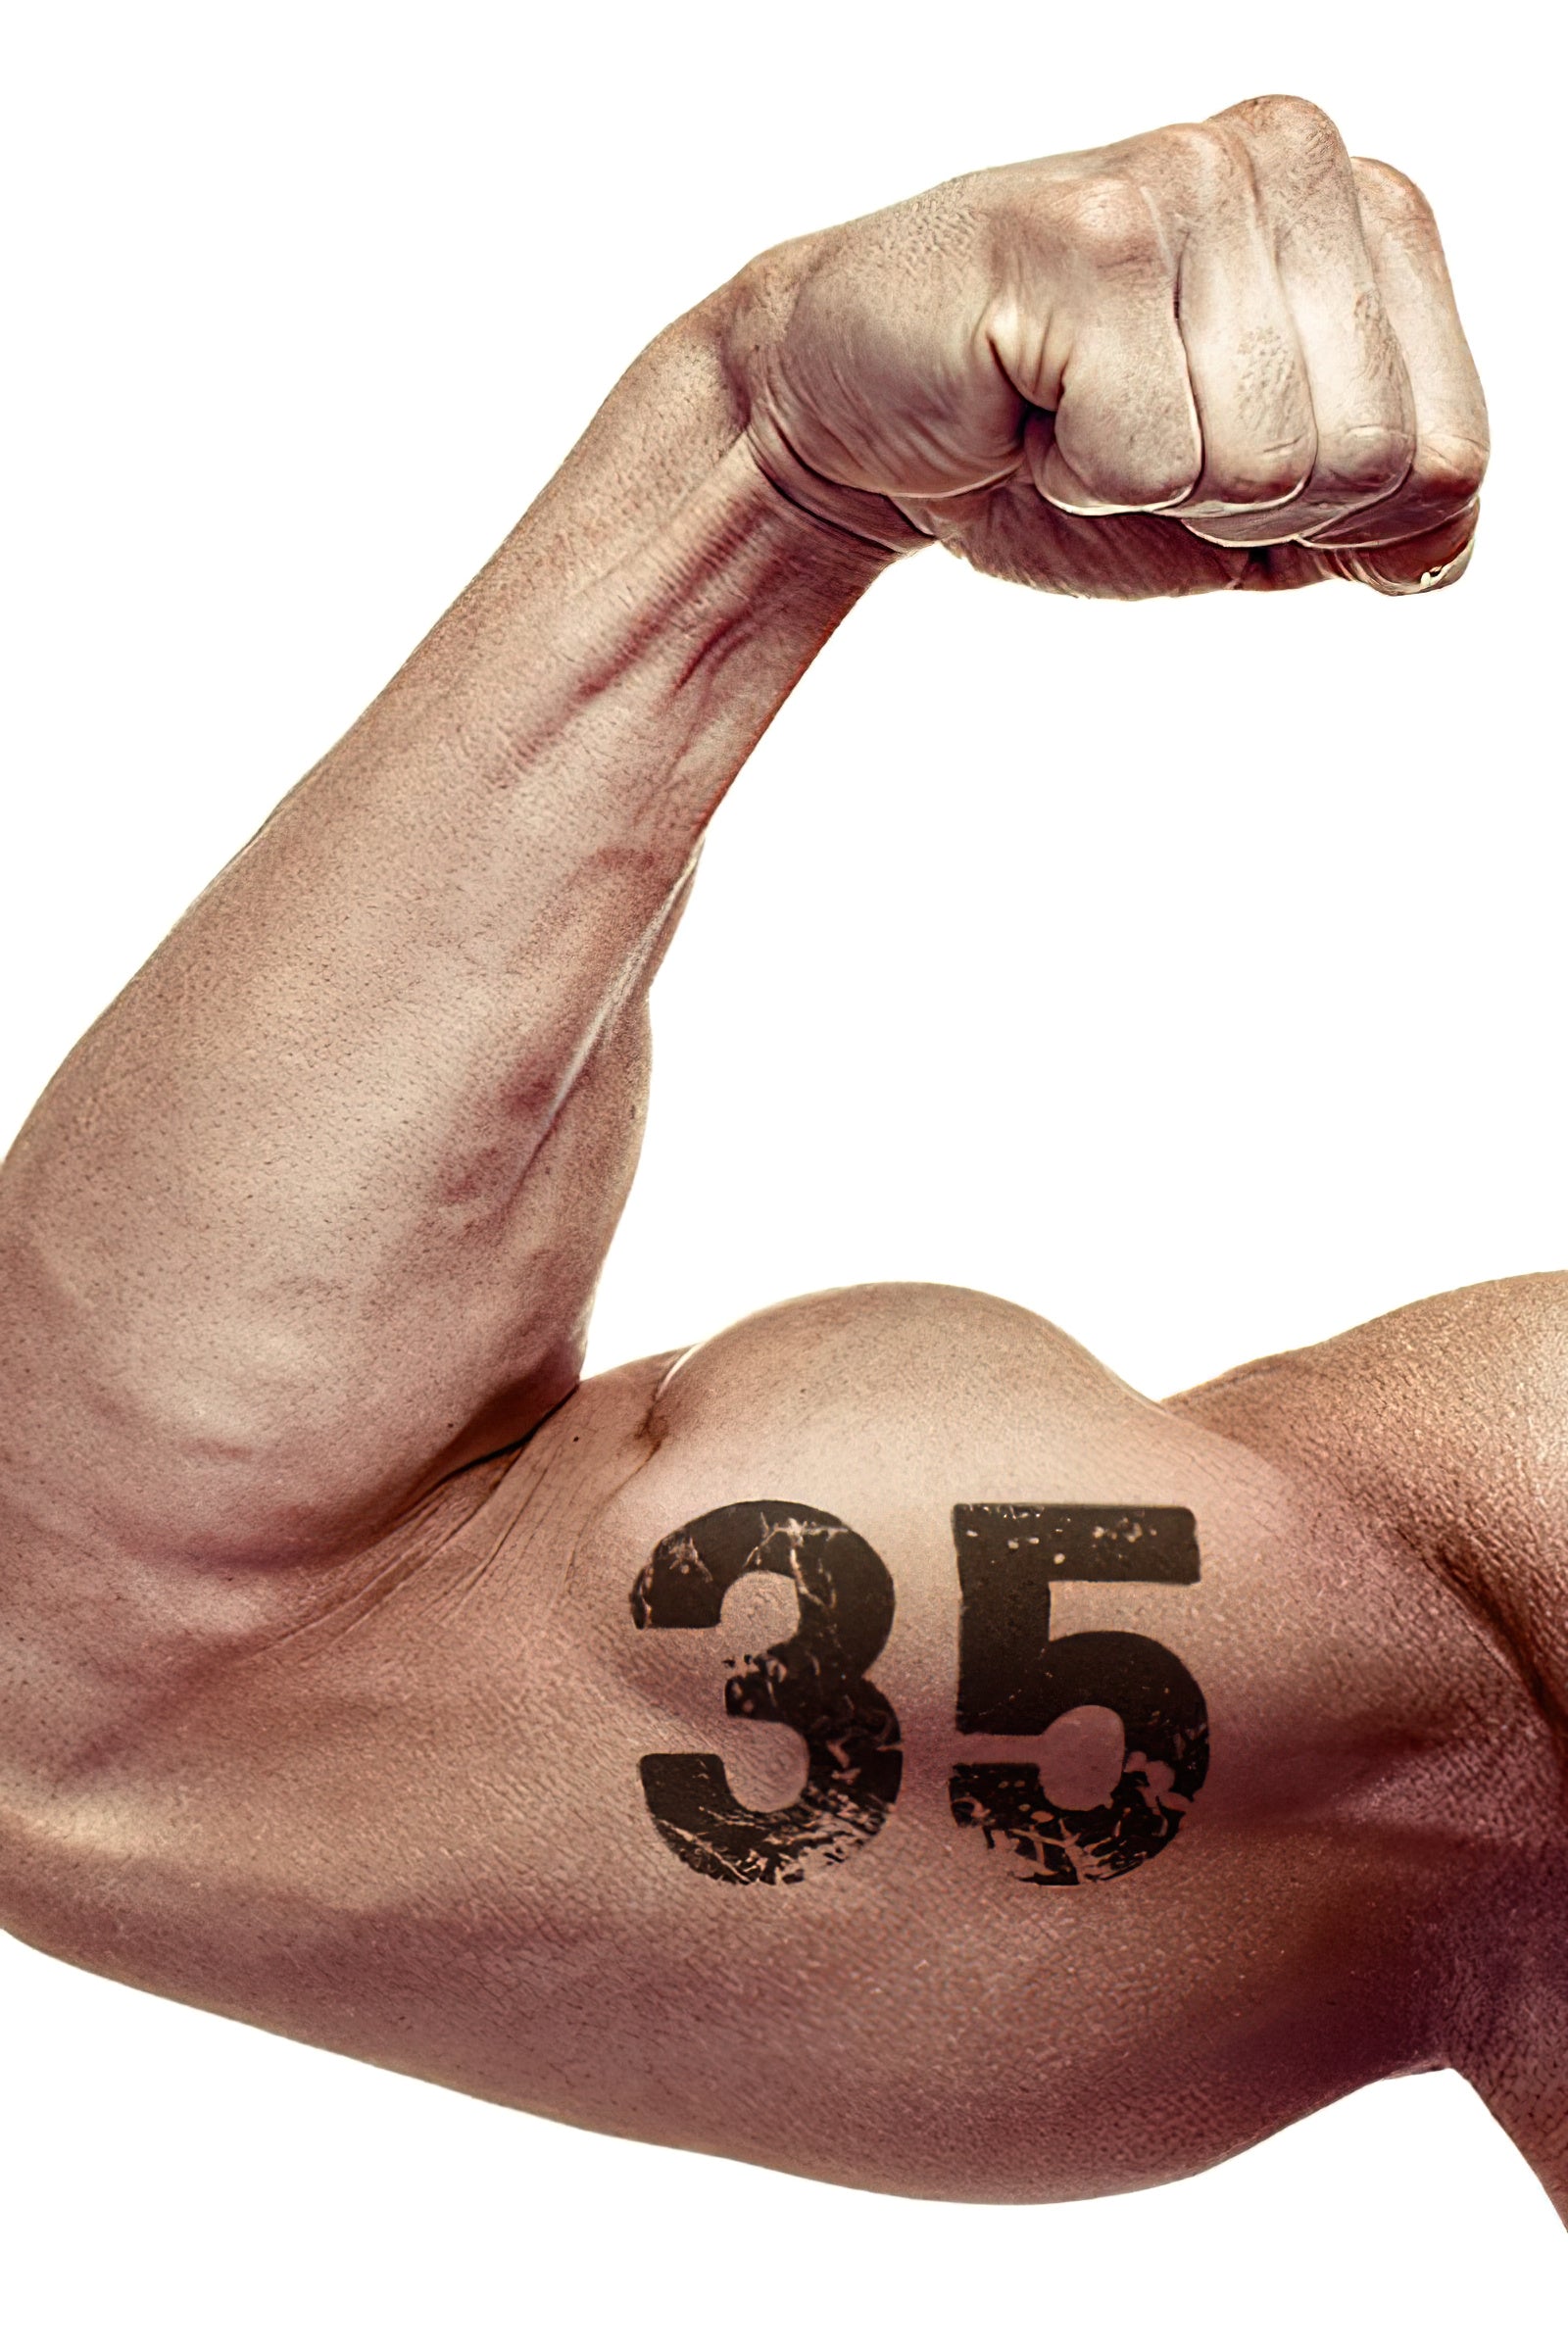 35 Tipps, die Dir dabei helfen werden, Deine Muskelzuwächse zu verdoppeln